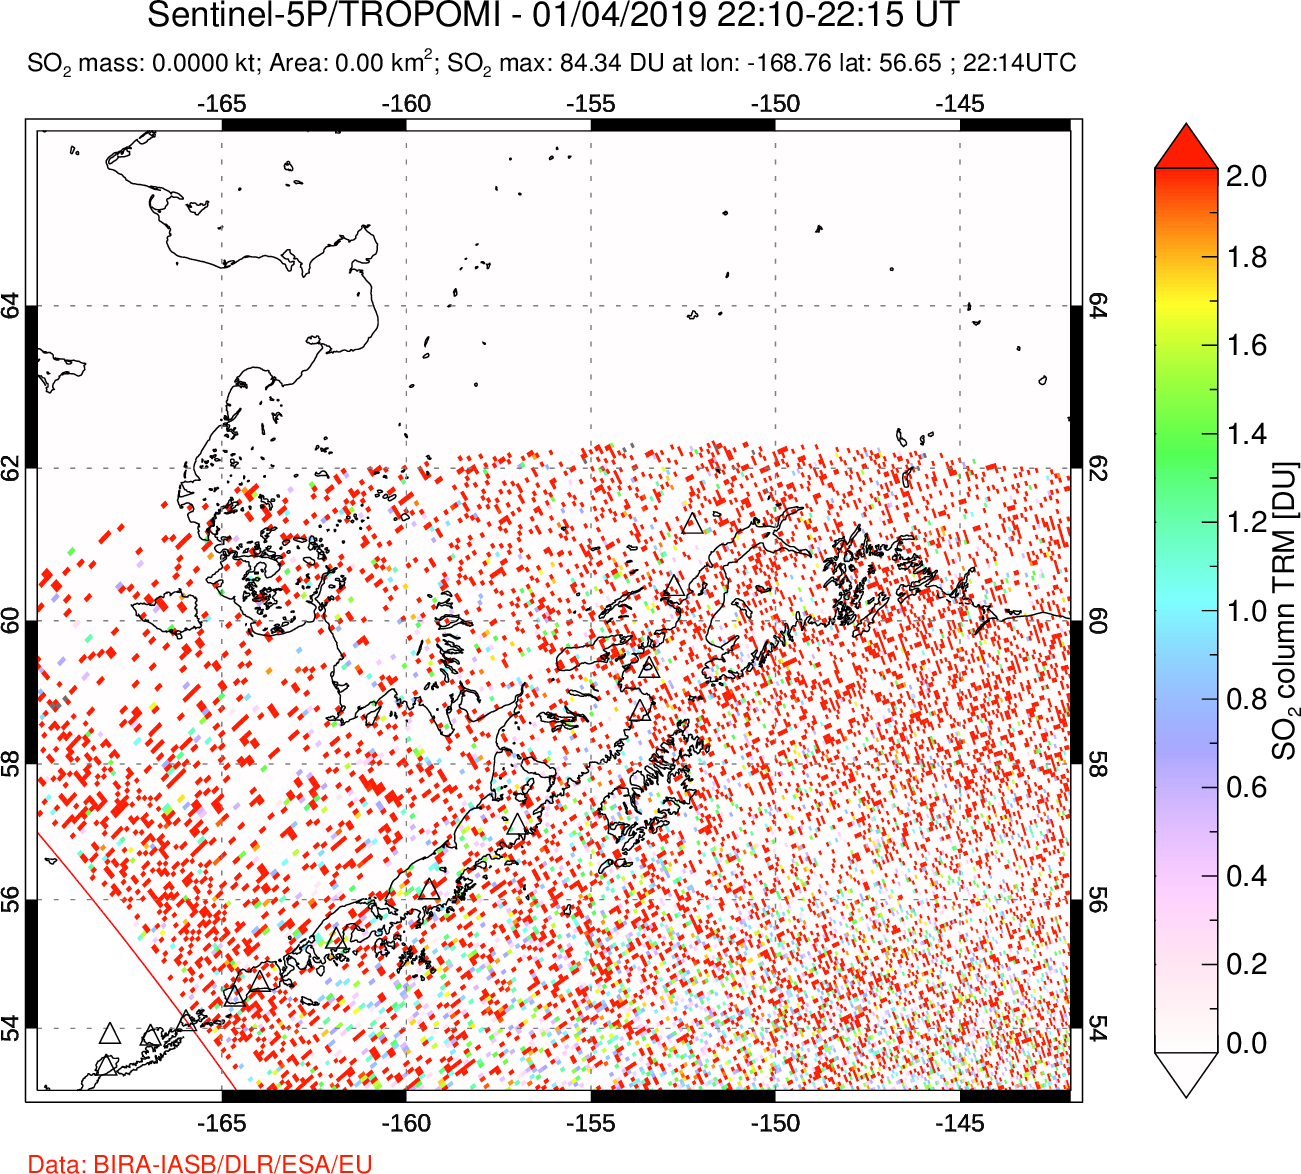 A sulfur dioxide image over Alaska, USA on Jan 04, 2019.